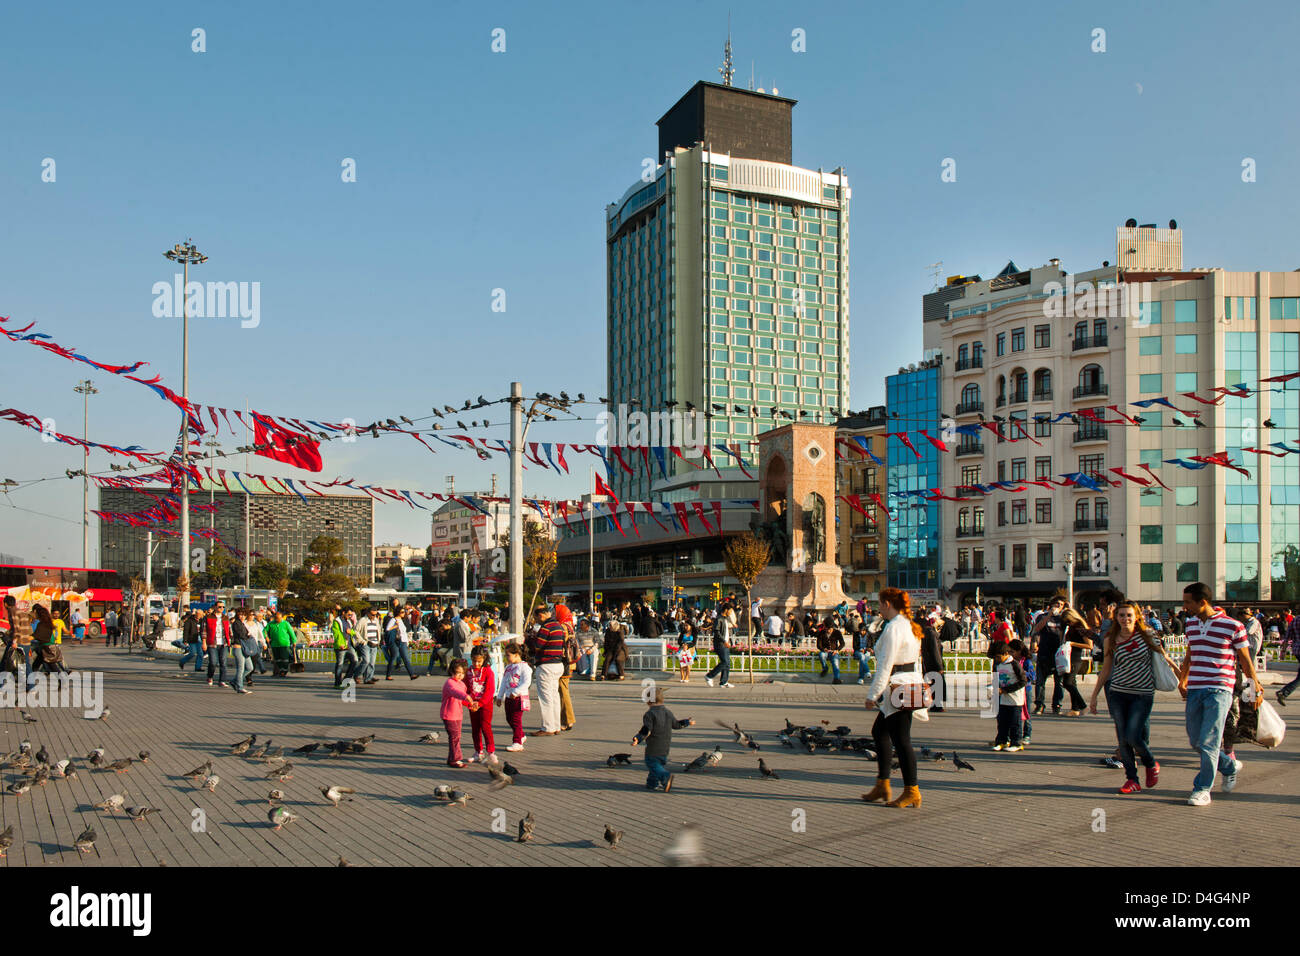 Türkei, Istanbul, Beyoglu, Taksim-Platz, Verkehrsknotenpunkt im europäischen Teil Istanbuls mit dem Denkmal der Republik. Stock Photo